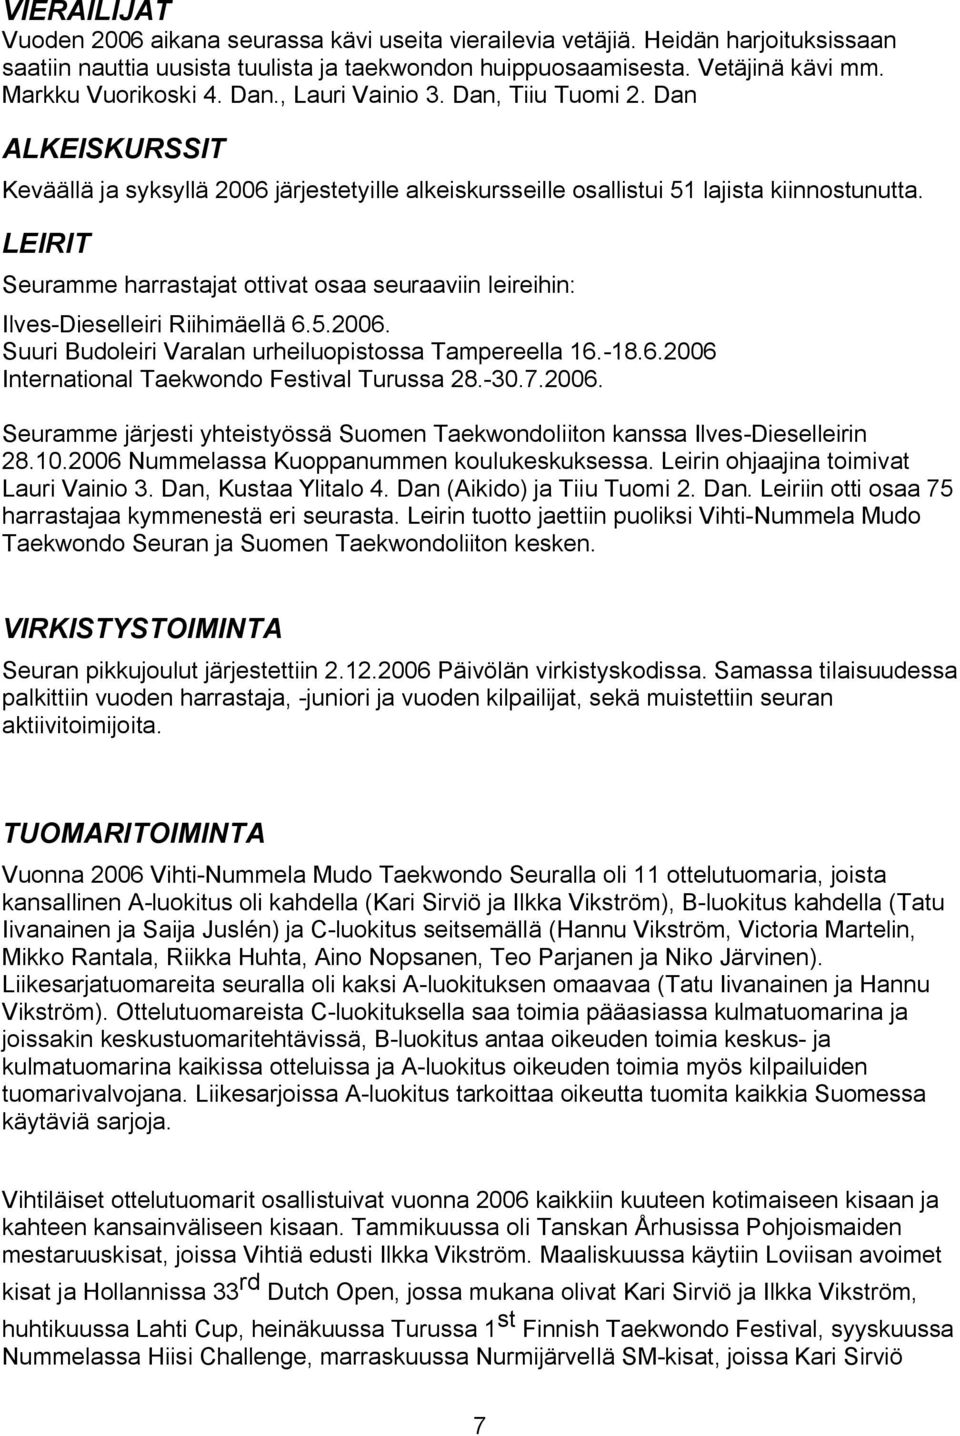 LEIRIT Seuramme harrastajat ottivat osaa seuraaviin leireihin: Ilves-Dieselleiri Riihimäellä 6.5.2006. Suuri Budoleiri Varalan urheiluopistossa Tampereella 16.-18.6.2006 International Taekwondo Festival Turussa 28.